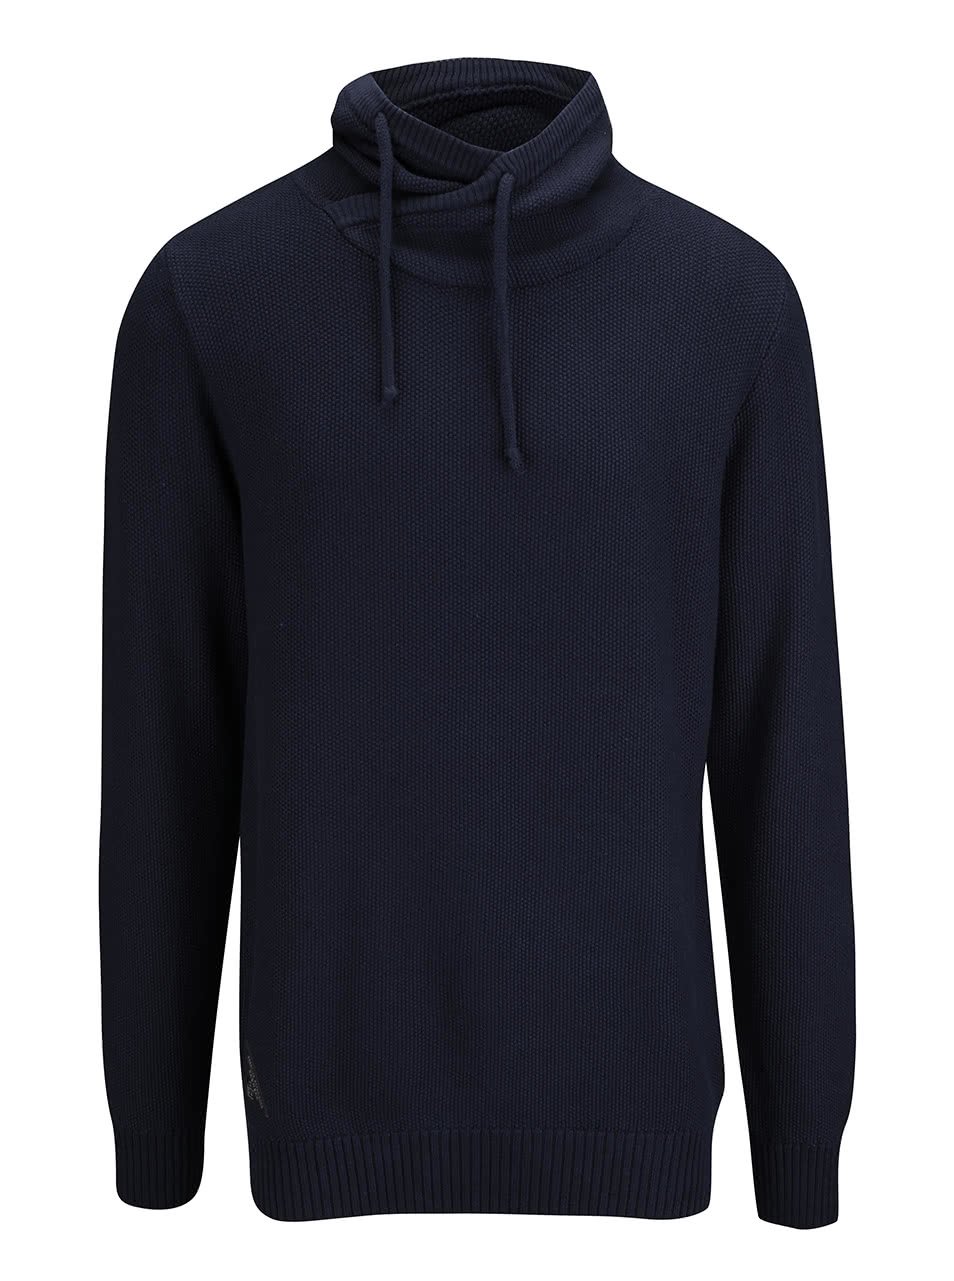 Tmavě modrý pánský svetr s vysokým límcem Ragwear Moose Organic